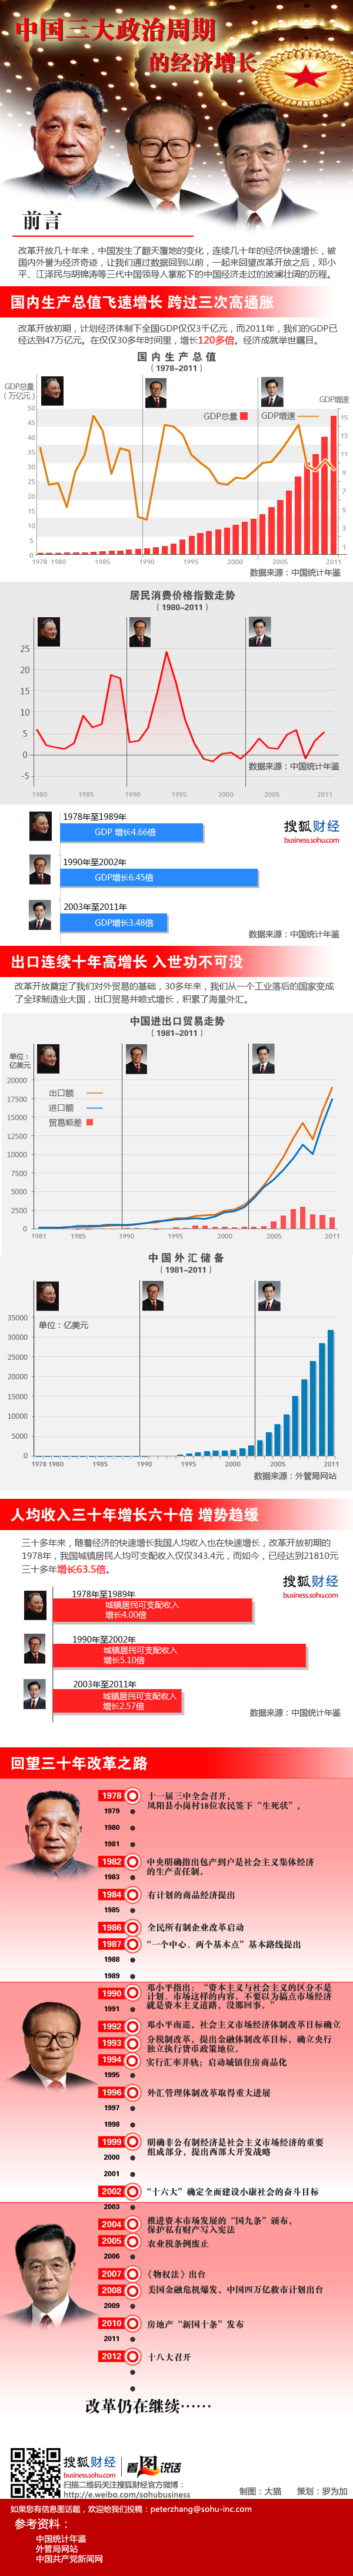 看图说话 第18期：中国三大政治周期的经济增长